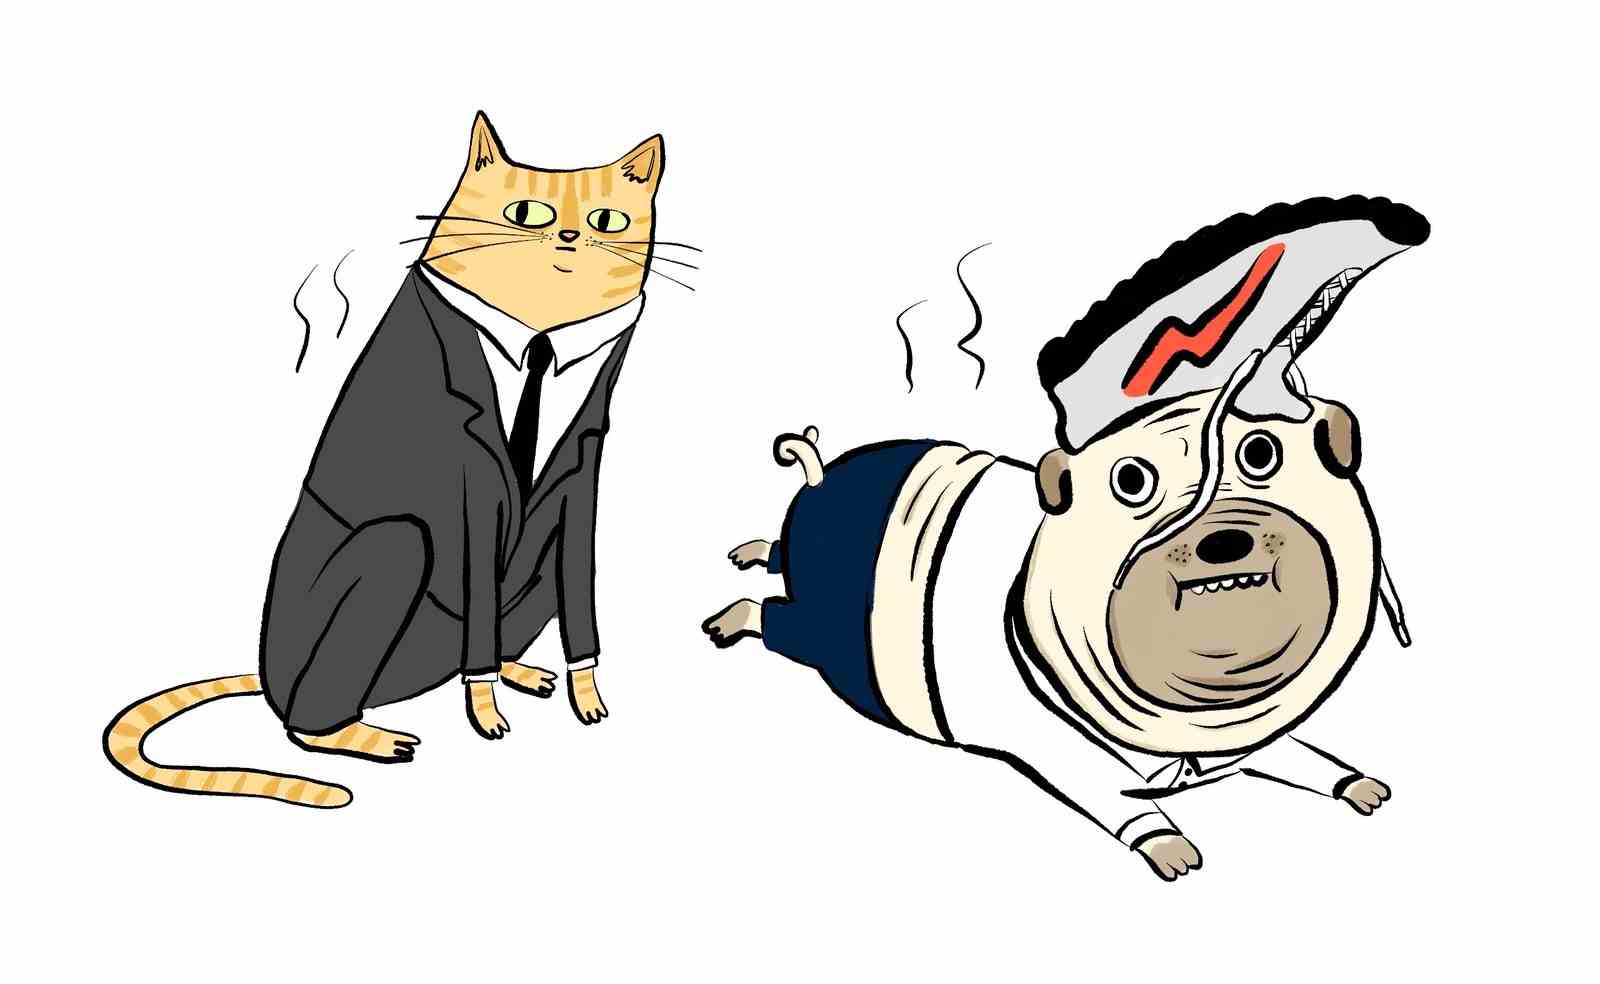 Katze und Hund tragen maßgeschneiderte Kraftanzüge aus der Trainingskleidung ihrer Besitzer.